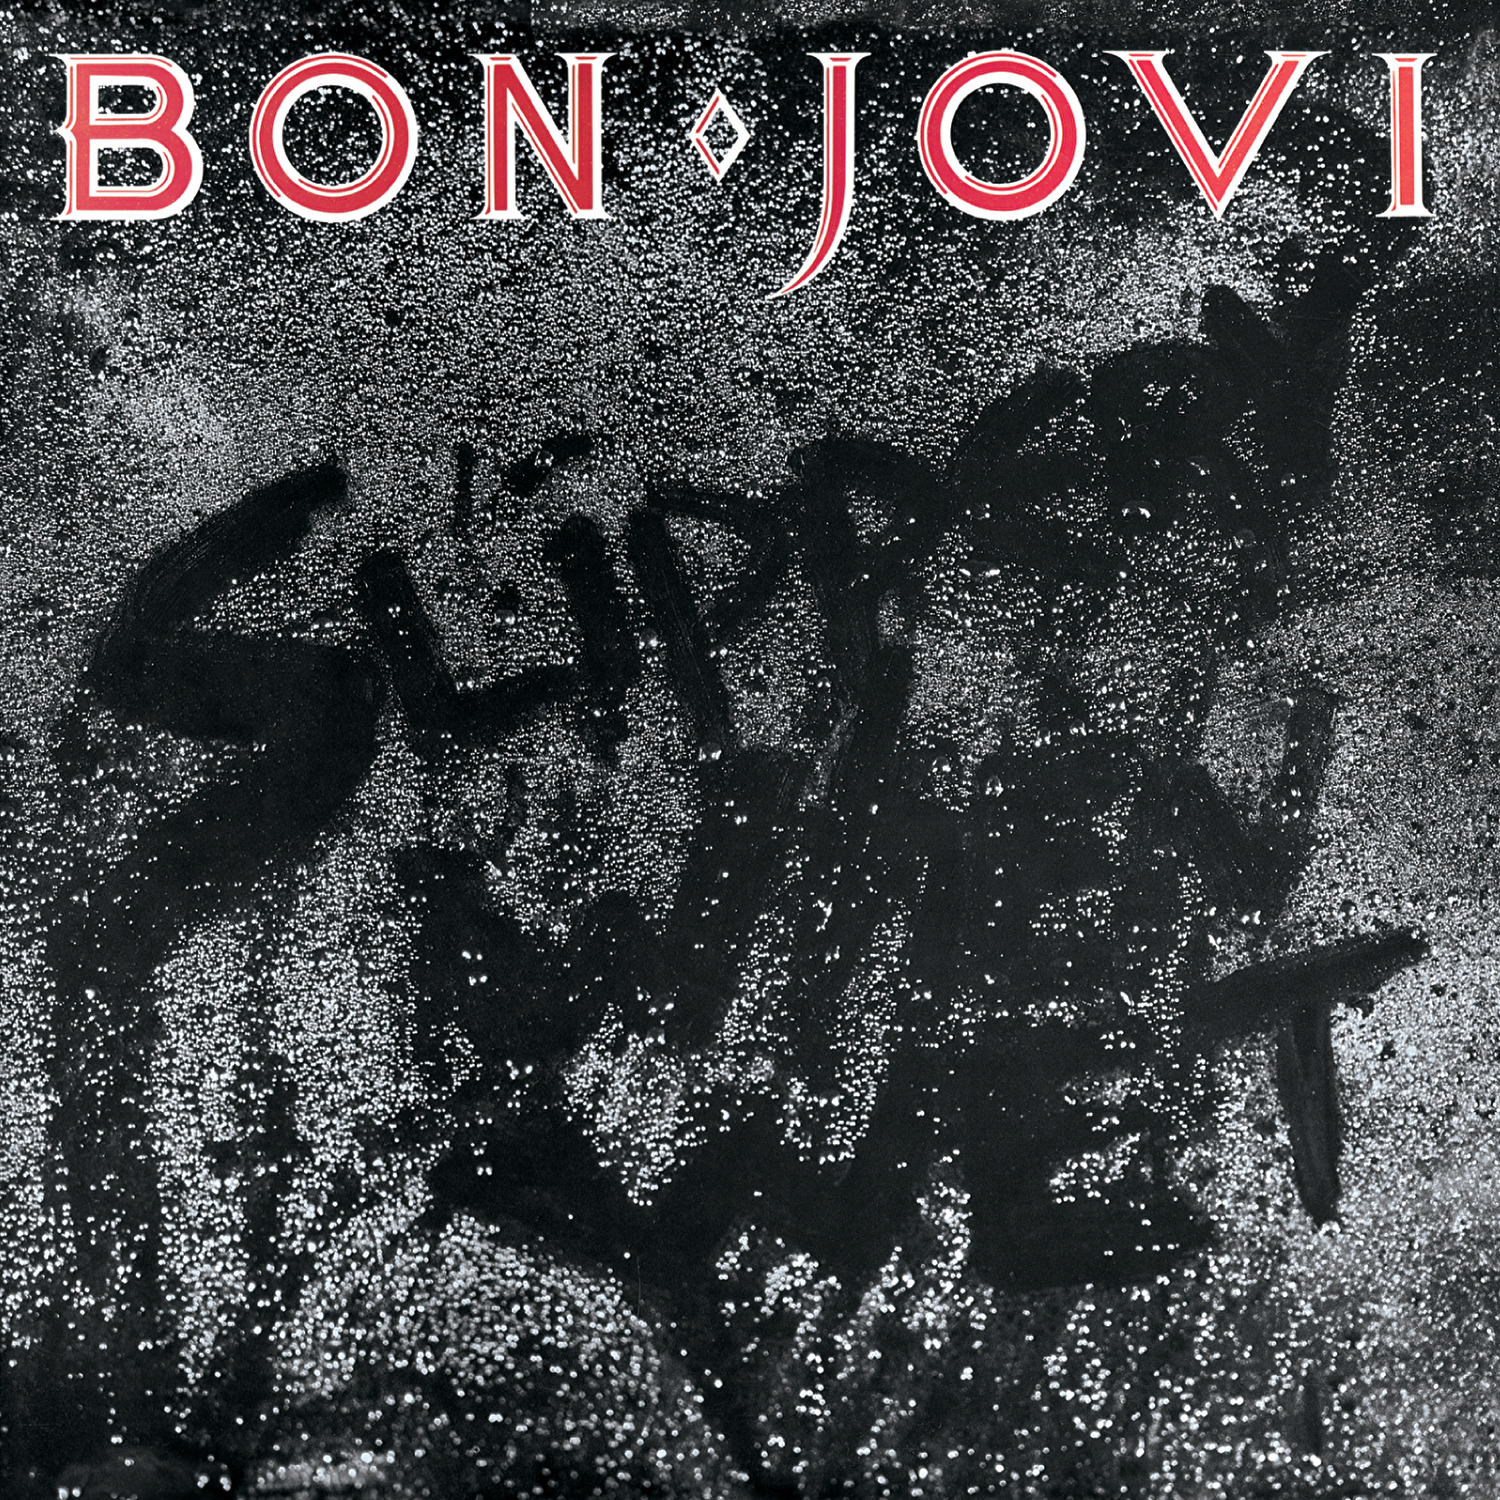 Imagem da arte de capa do disco Slippery When Wet do Bon Jovi. A arte consiste na fotografia de um saco de lixo preto molhado em que o título do álbum pode ser lido. Na parte superior, em letras vermelhas com bordas brancas está o nome da banda de rock.